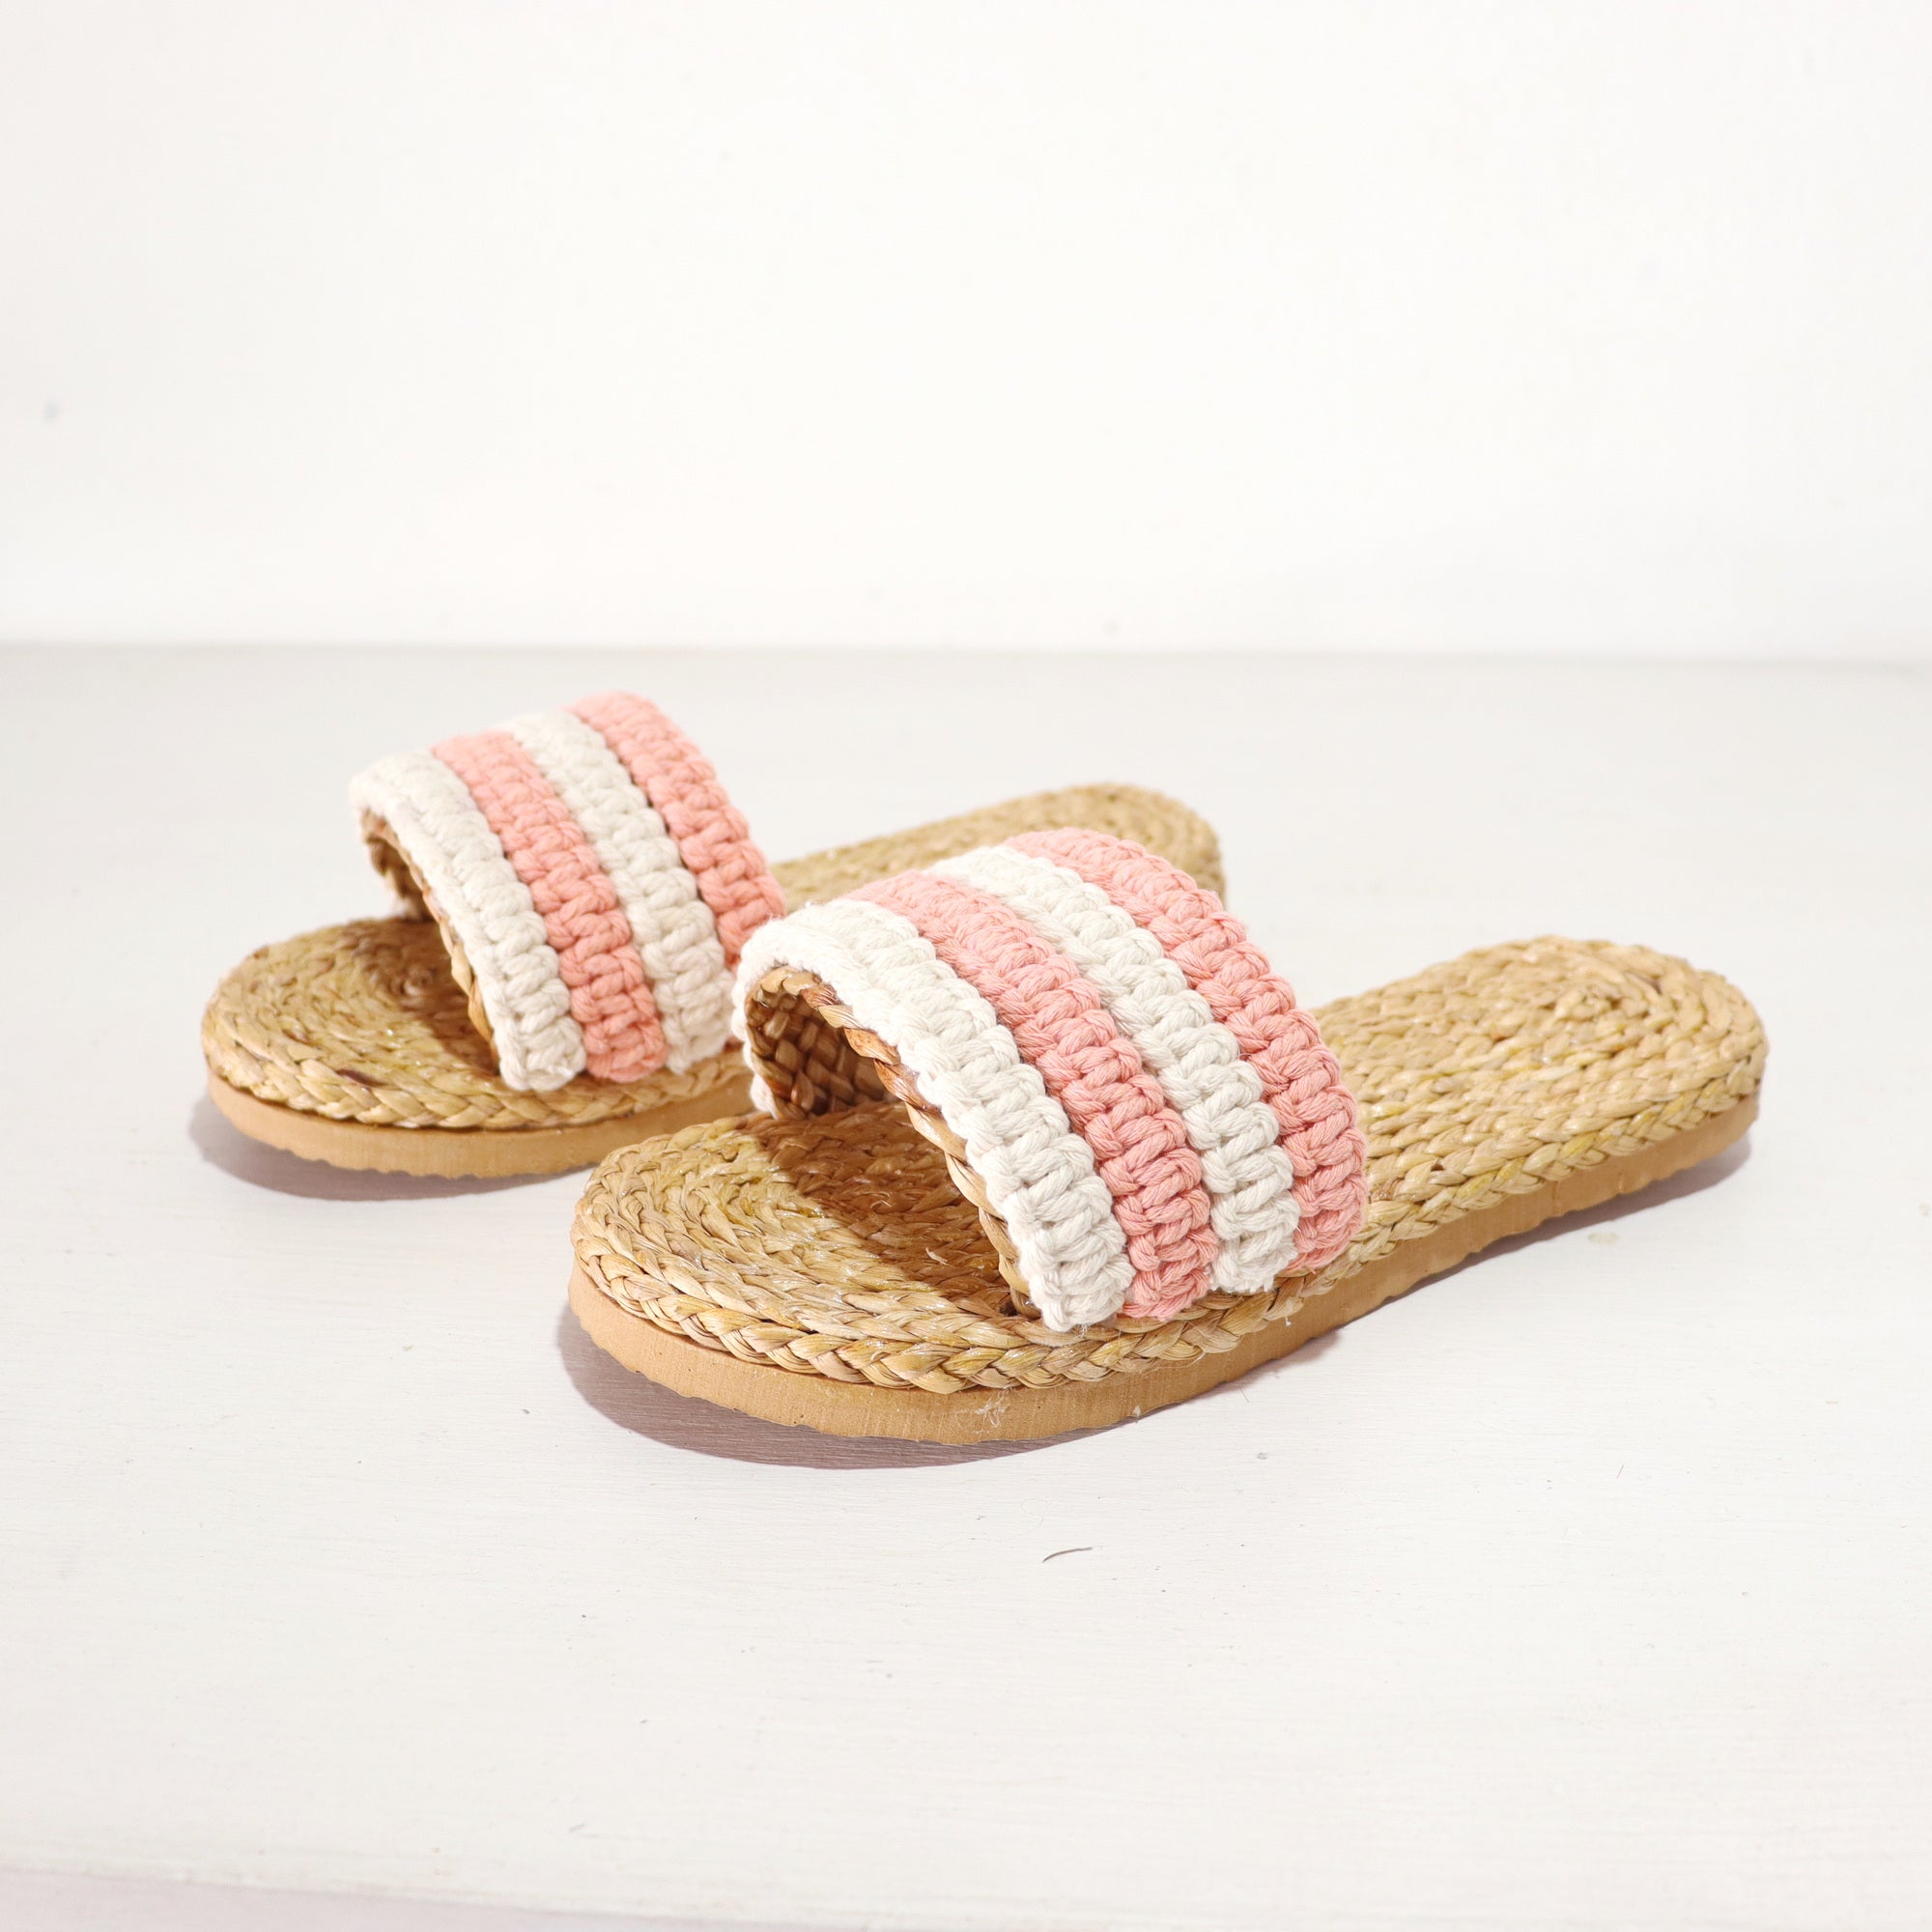 رافي - حذاء مكرامية من القش باللون الوردي والأبيض